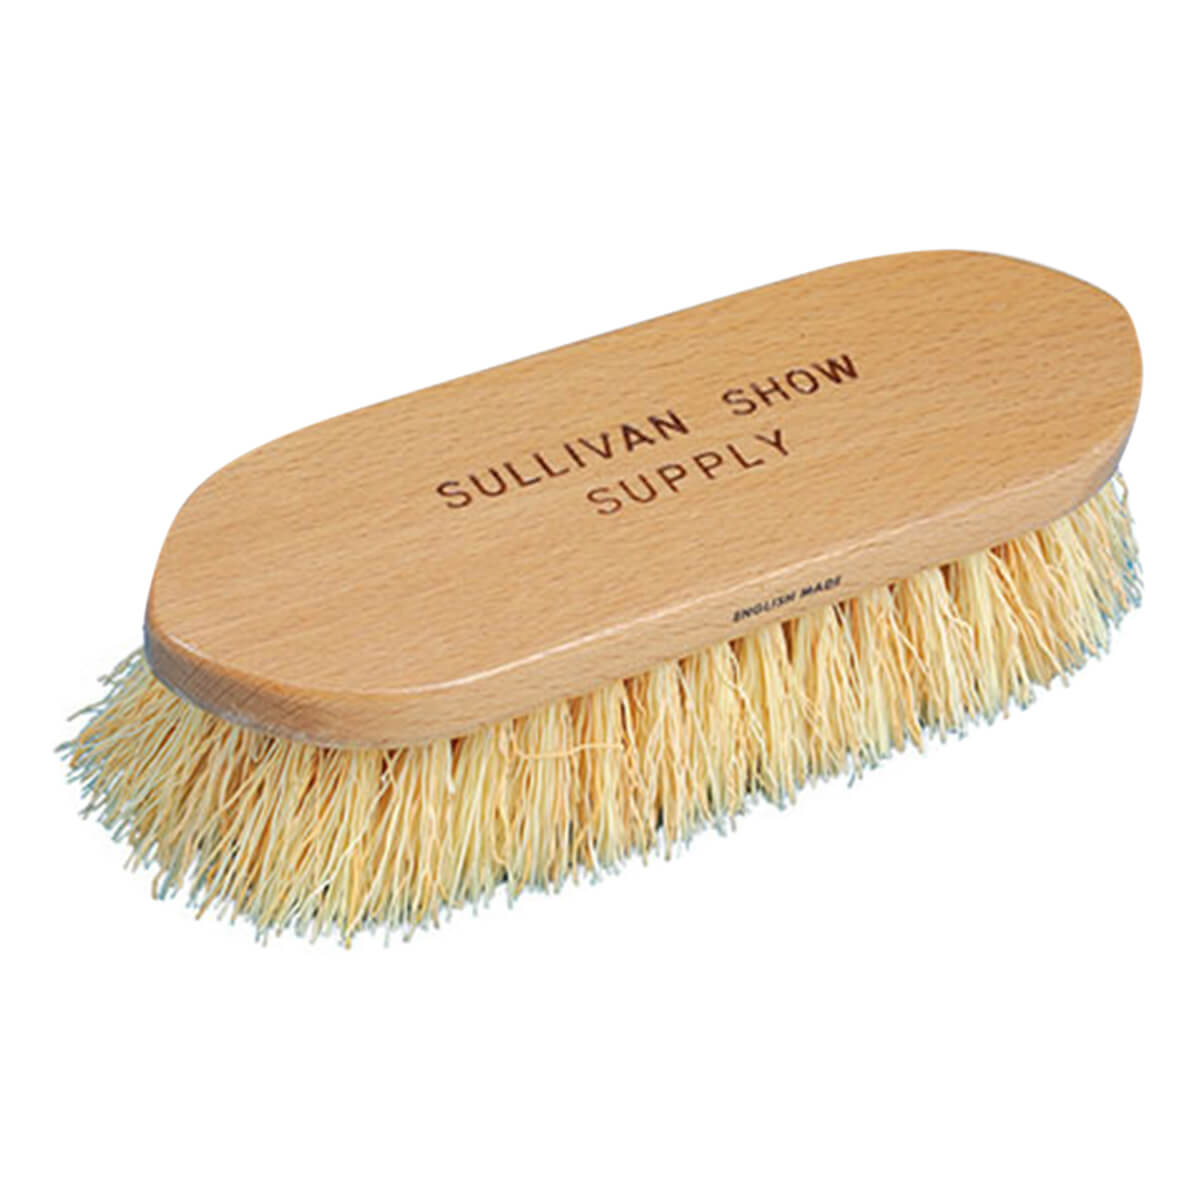 Sullivan's Rice Root Mix Brush